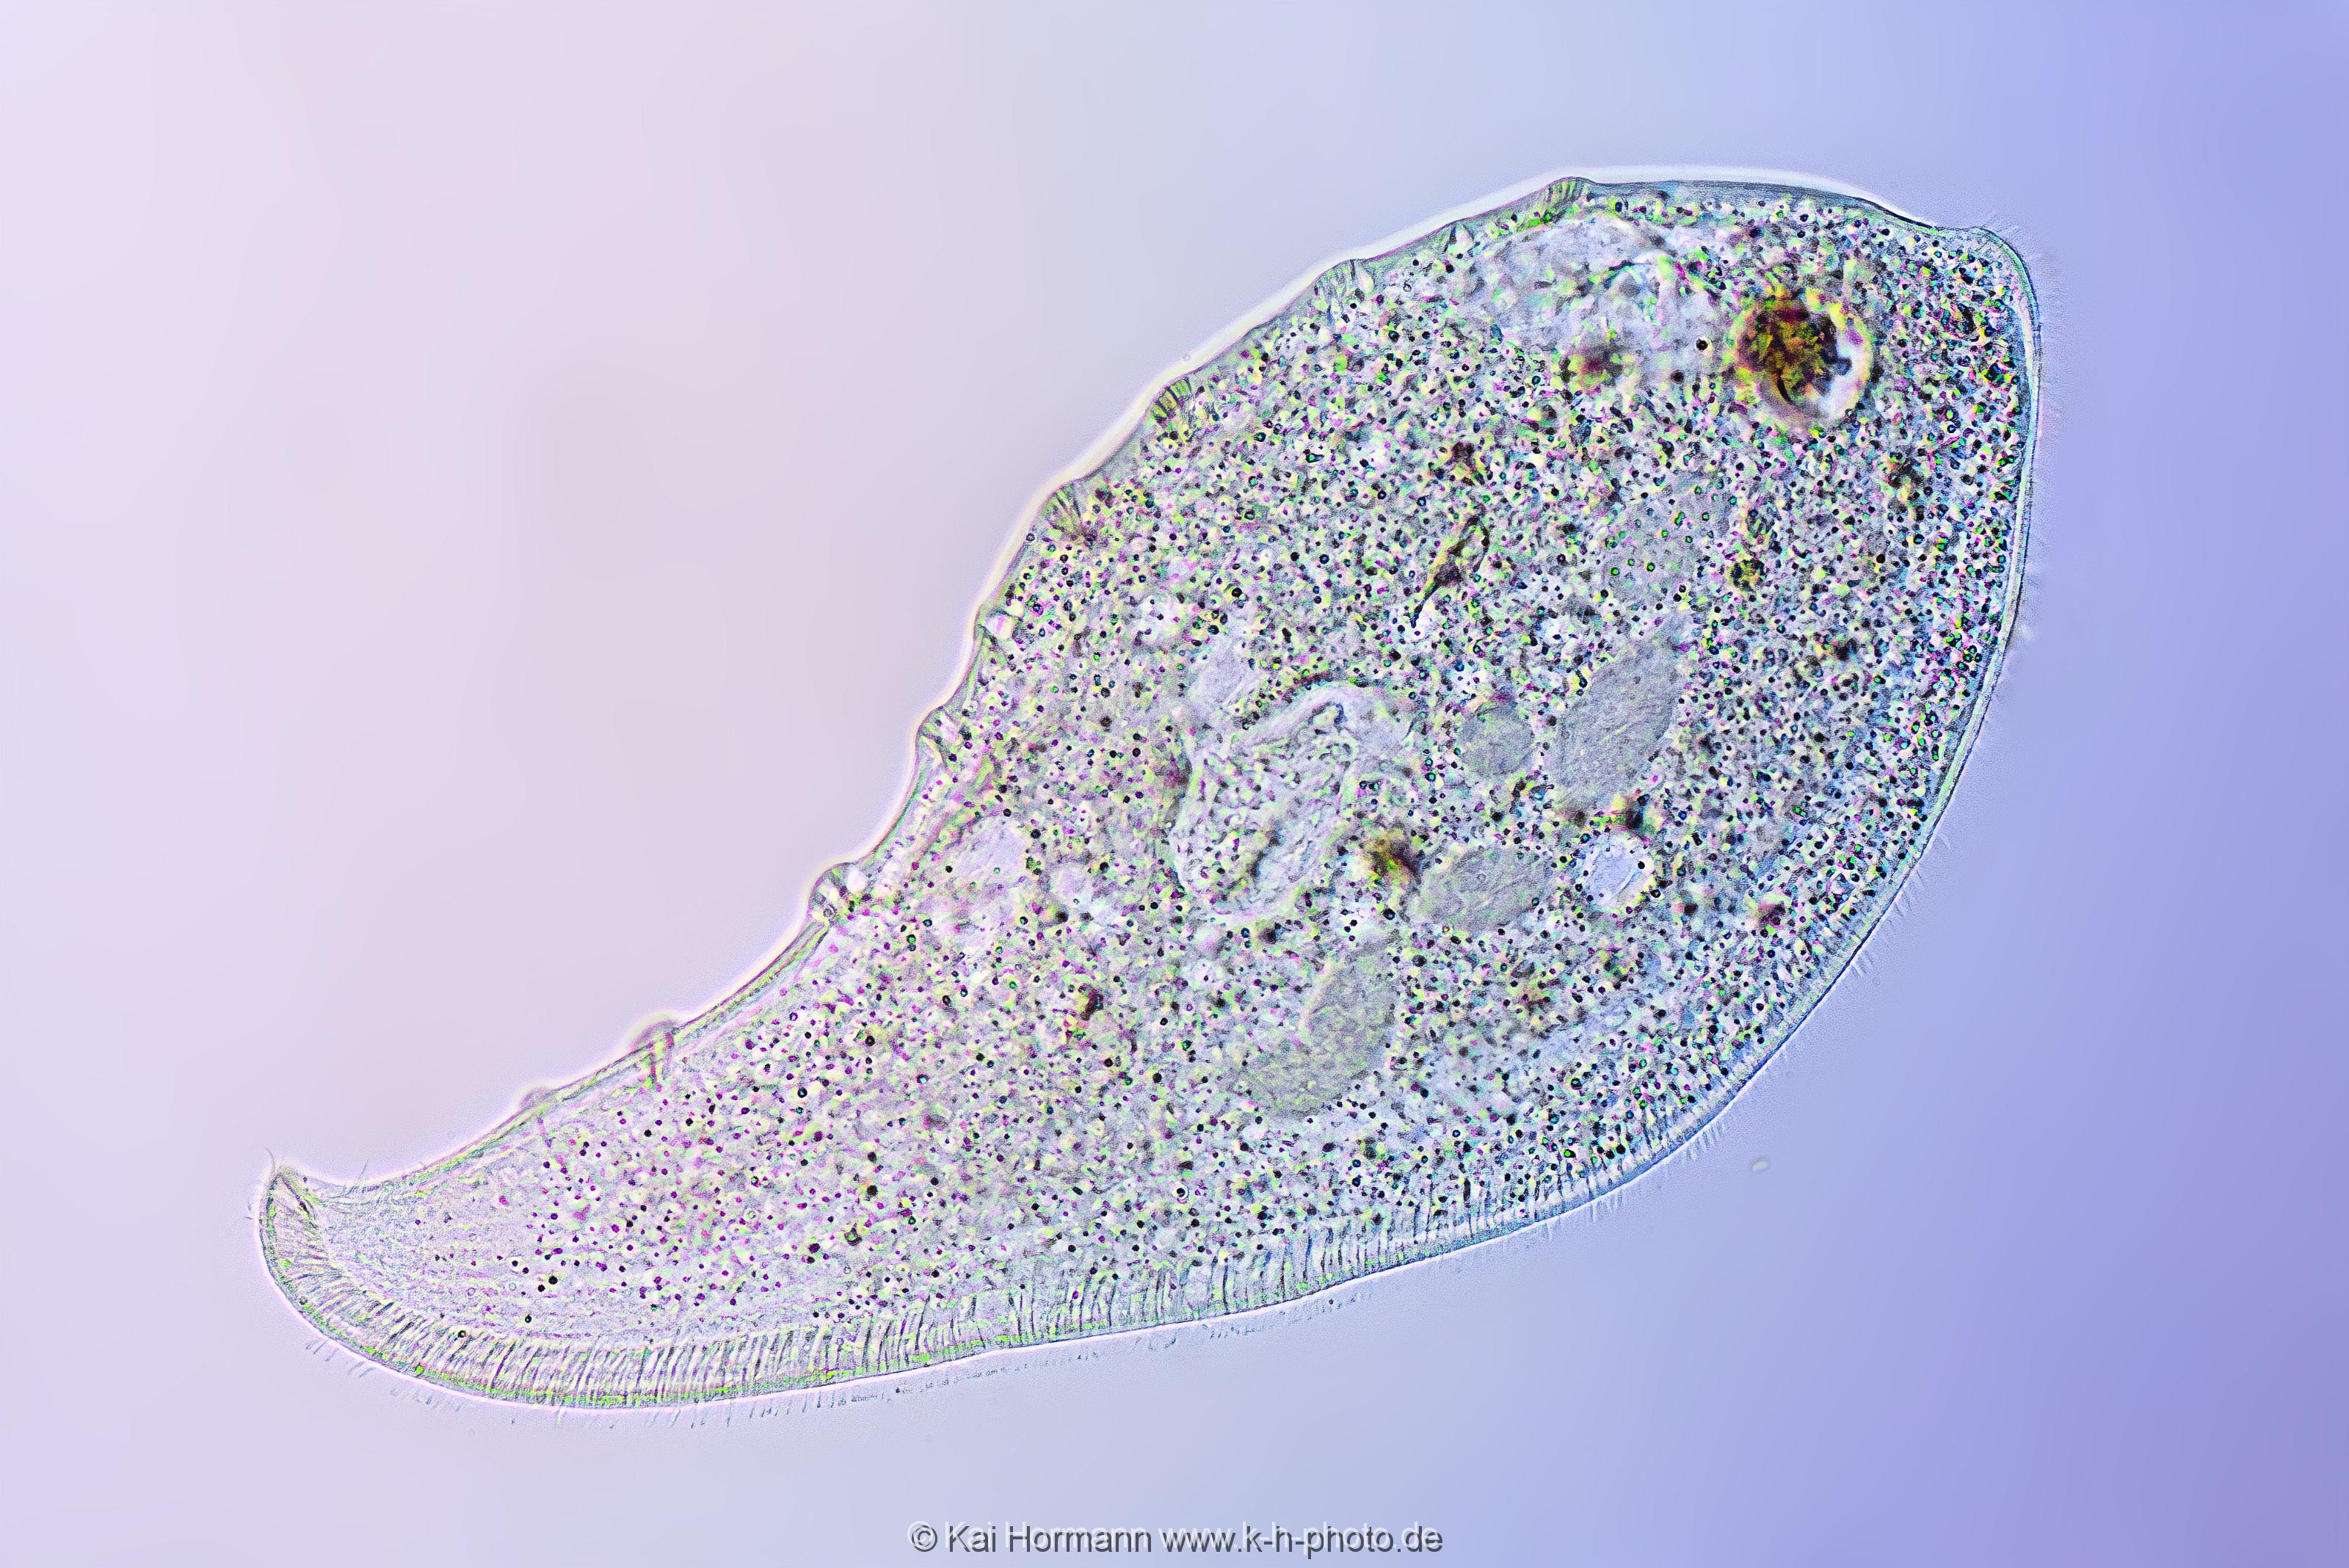 Wimpertierchen "Wallendes Blatt". Mikrofotografie: Mikroskopische Aufnahmen von Einzellern, Algen und Kleinstlebewesen.